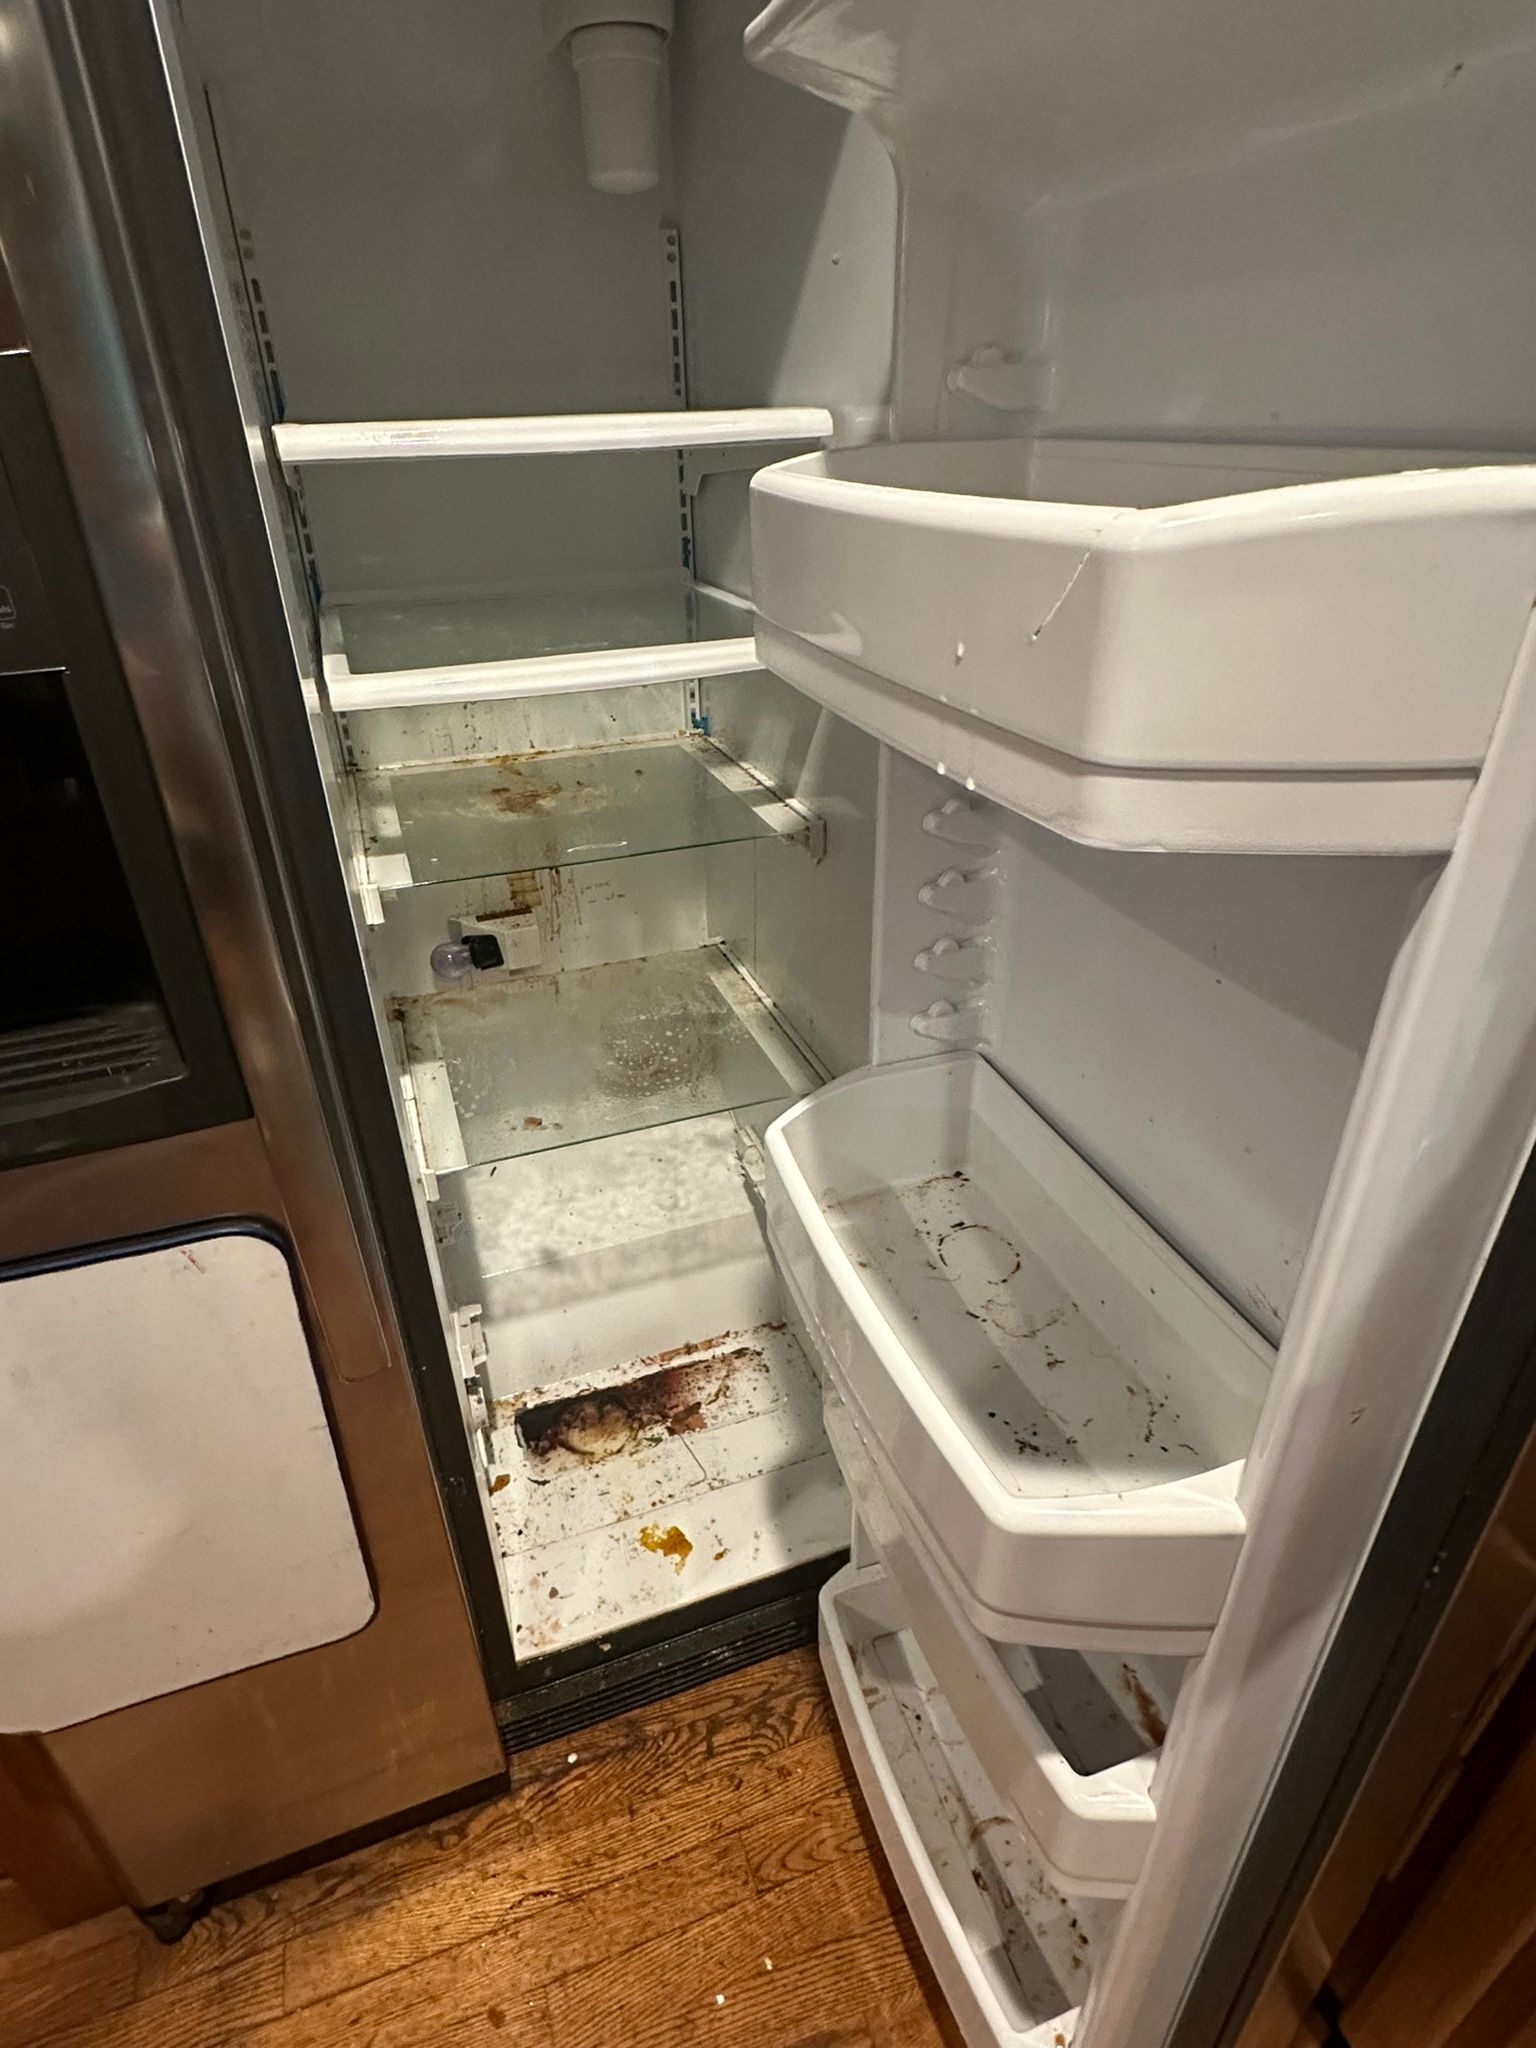 Imagem da geladeira antes do serviço